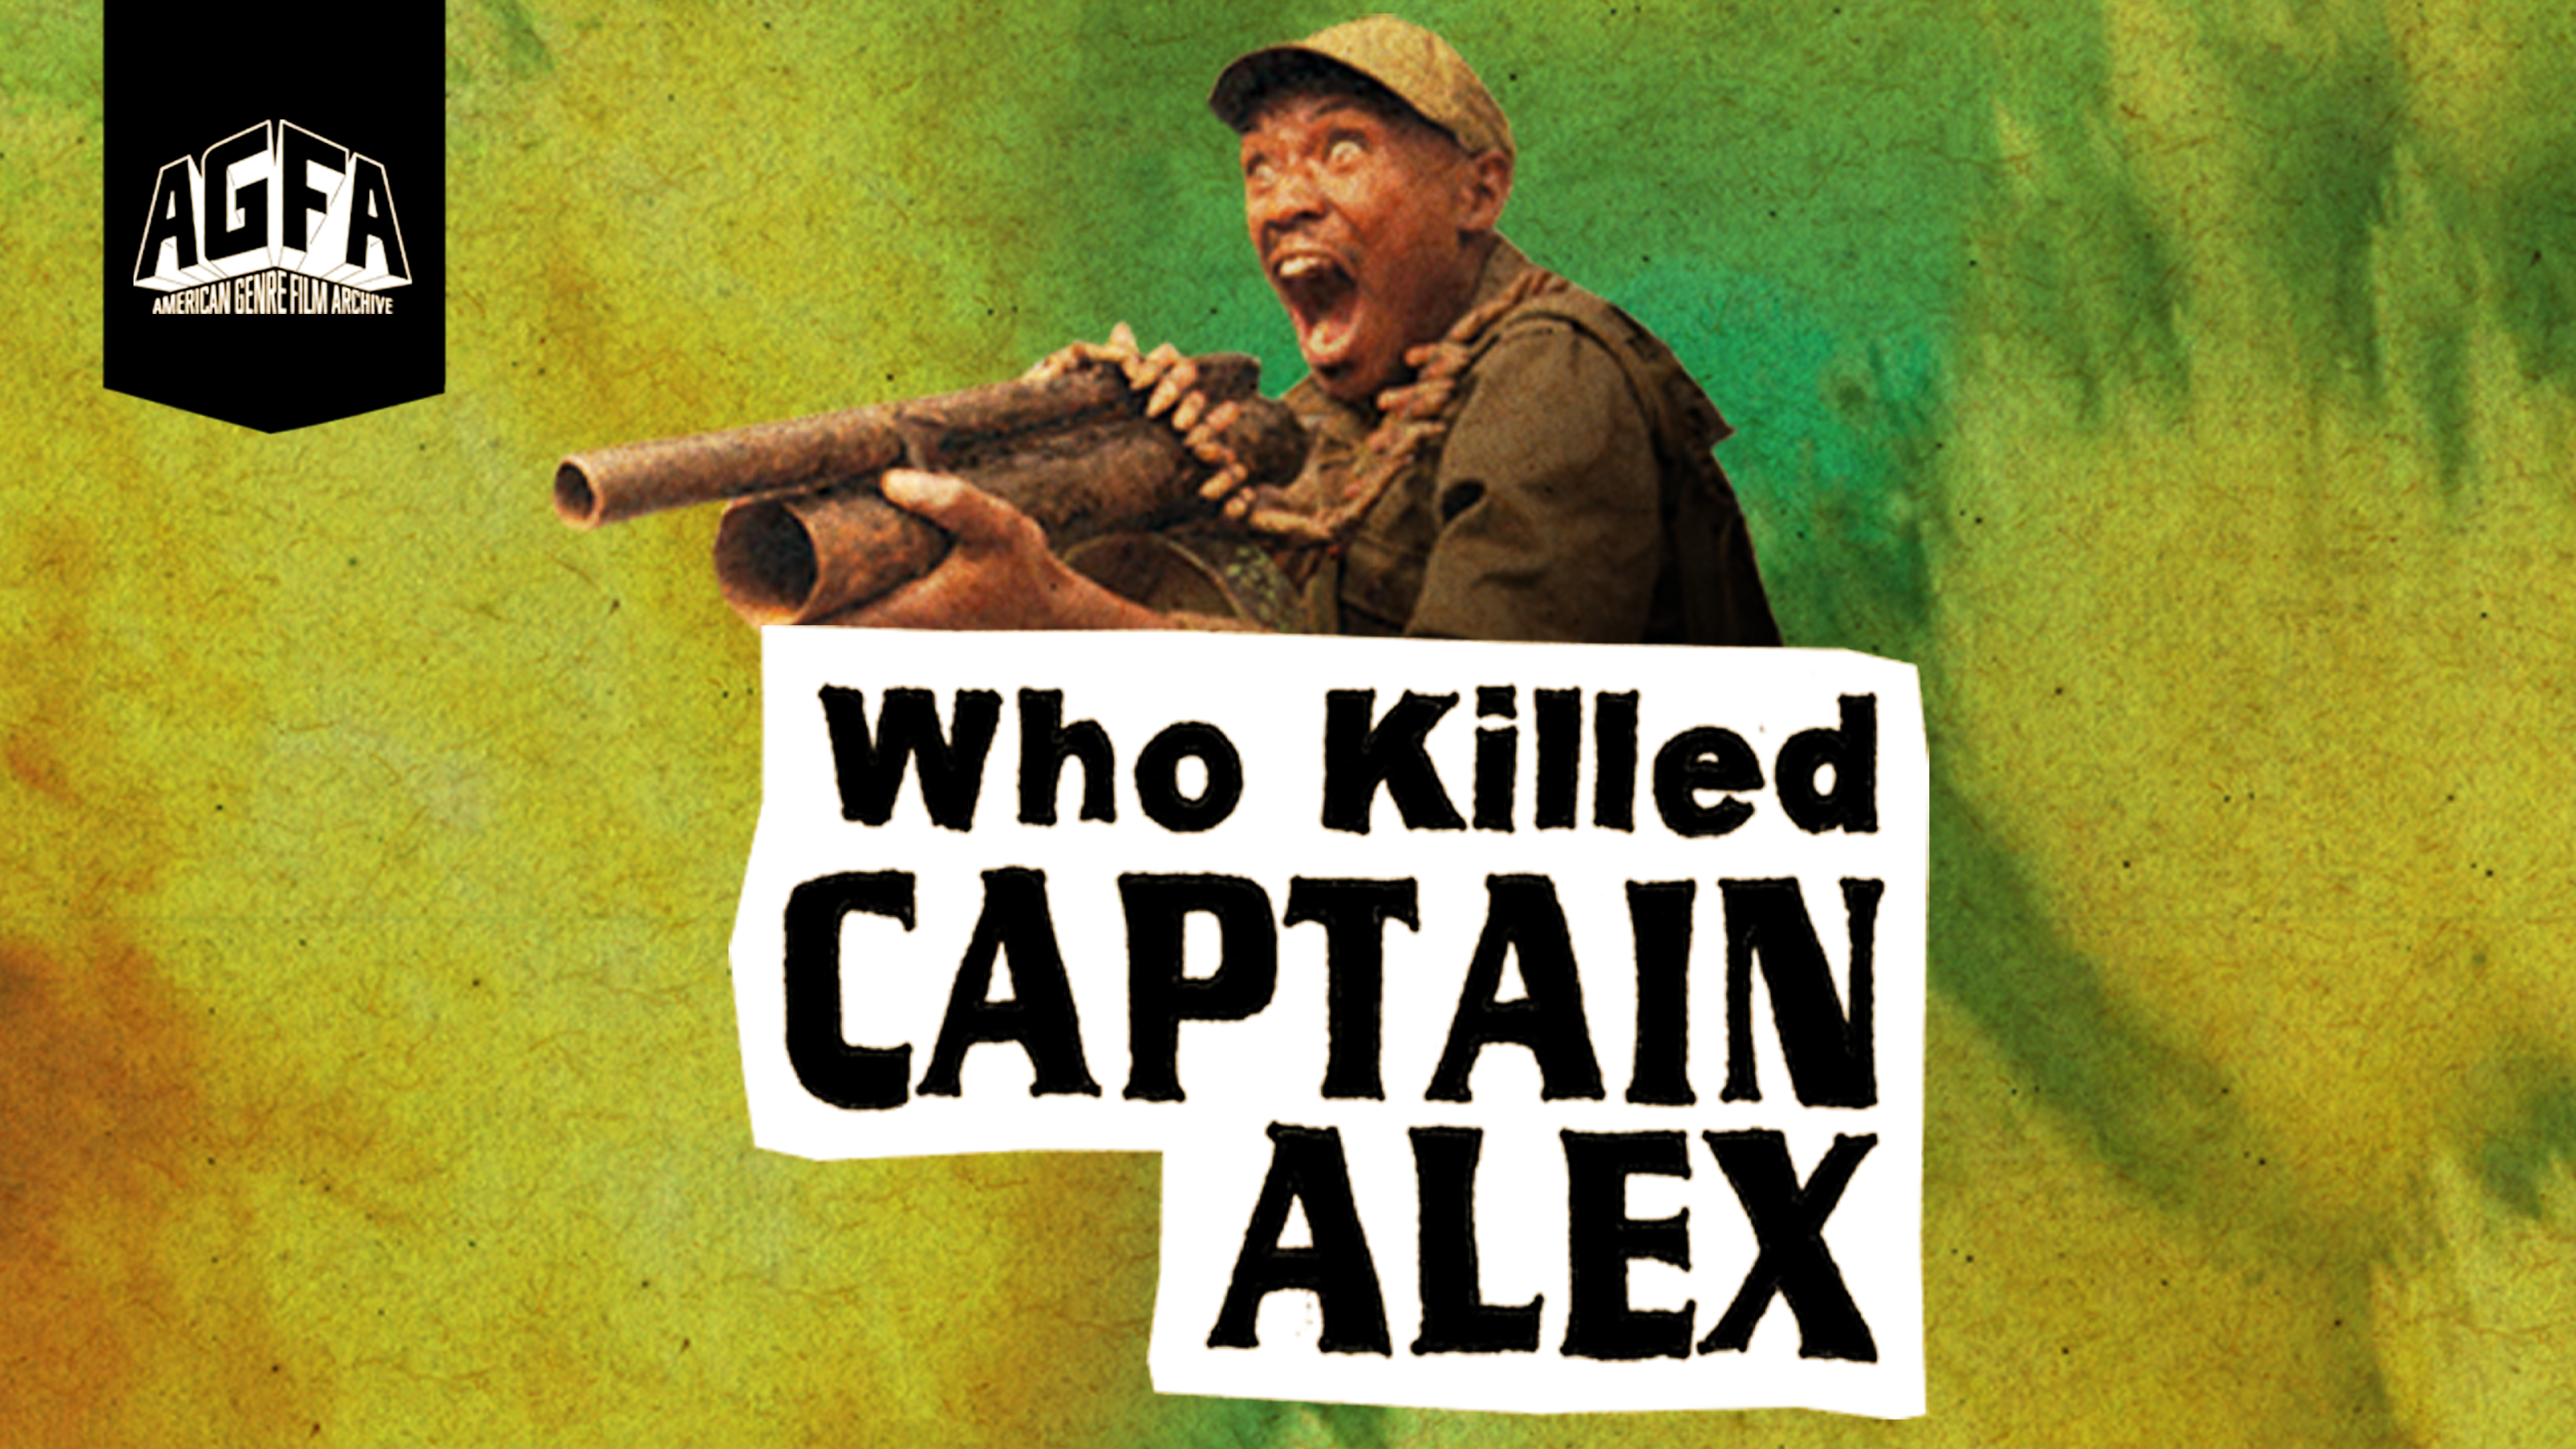 who killed captain alex red bandana